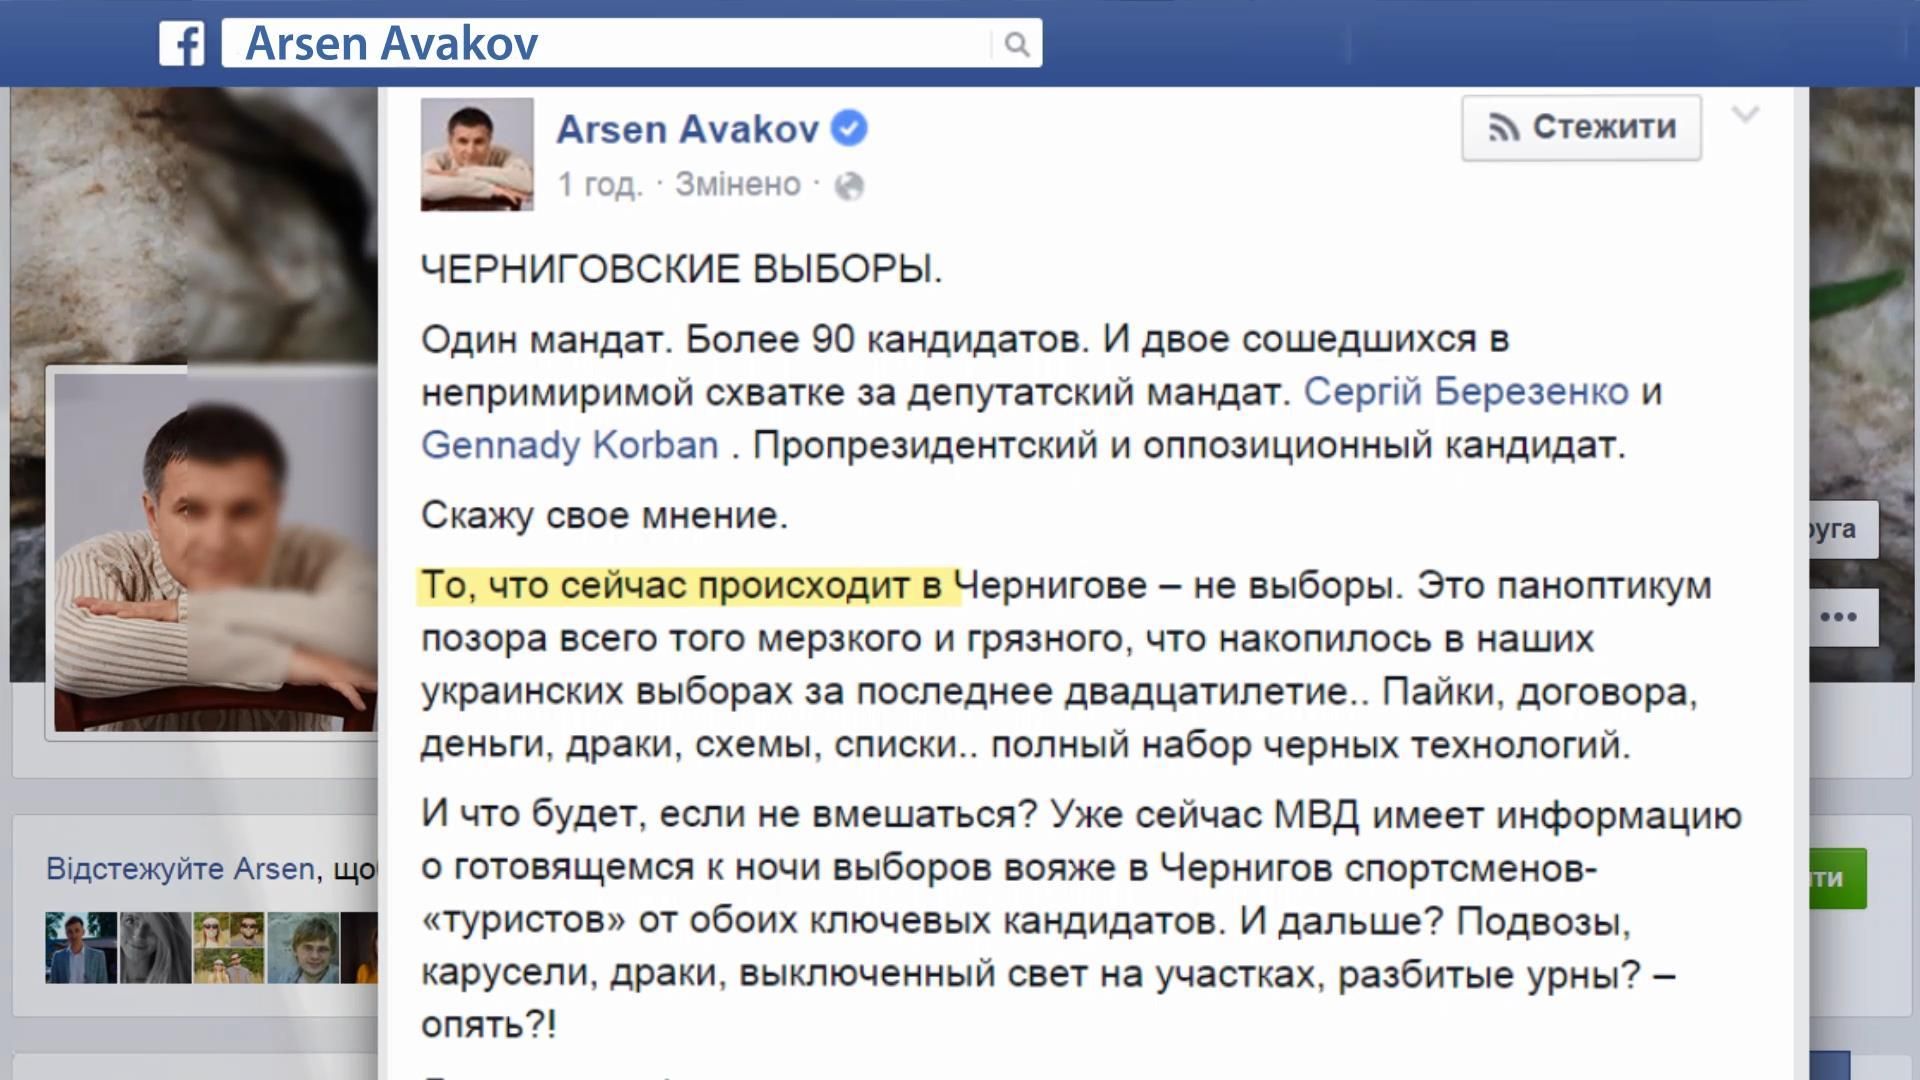 Аваков відправляє спецгрупу на вибори в Чернігові